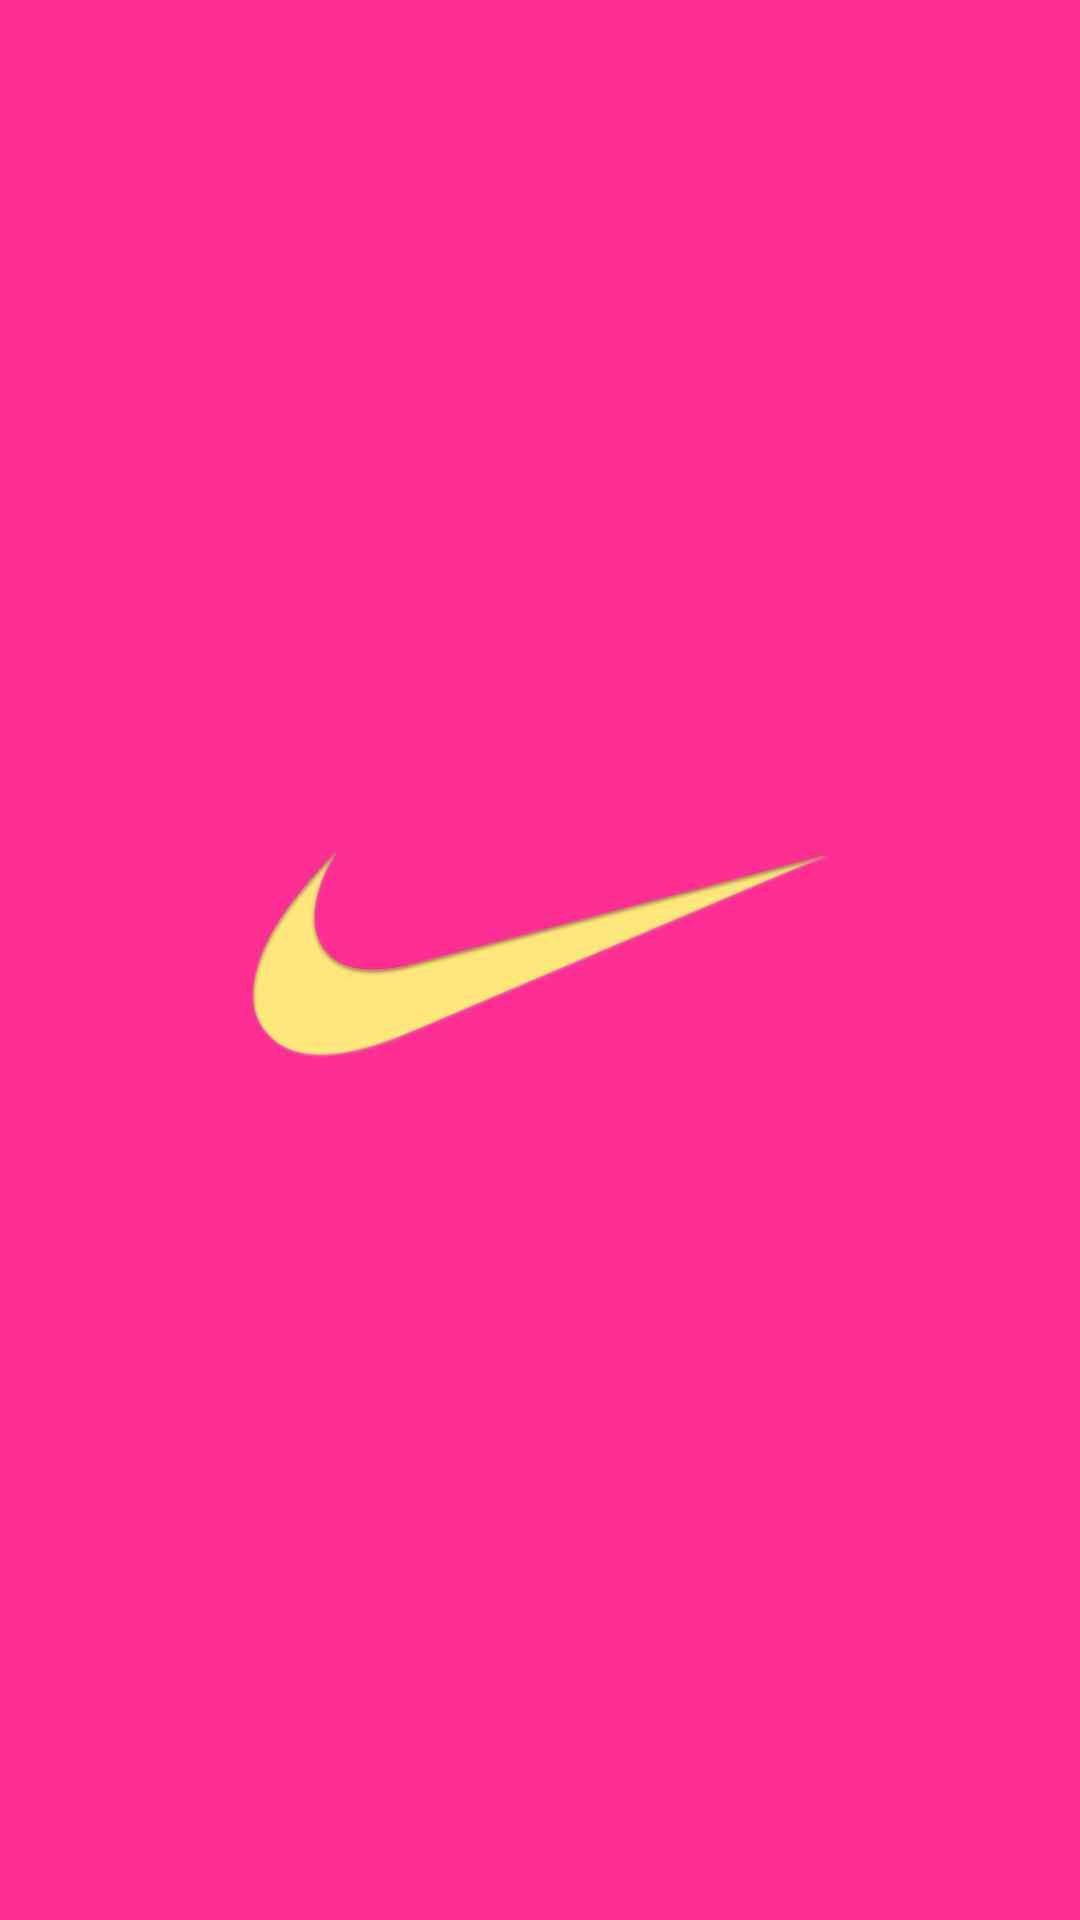 Hot Pink Nike Wallpapers: Bạn muốn tìm kiếm hình nền hoàn hảo cho mùa hè này, cảm giác tươi mới và sôi động với màu hồng nóng bỏng? Hãy truy cập vào hình ảnh liên quan đến Hot Pink Nike Wallpapers để tìm những hình ảnh đẹp mắt và phù hợp nhất với phong cách của bạn.